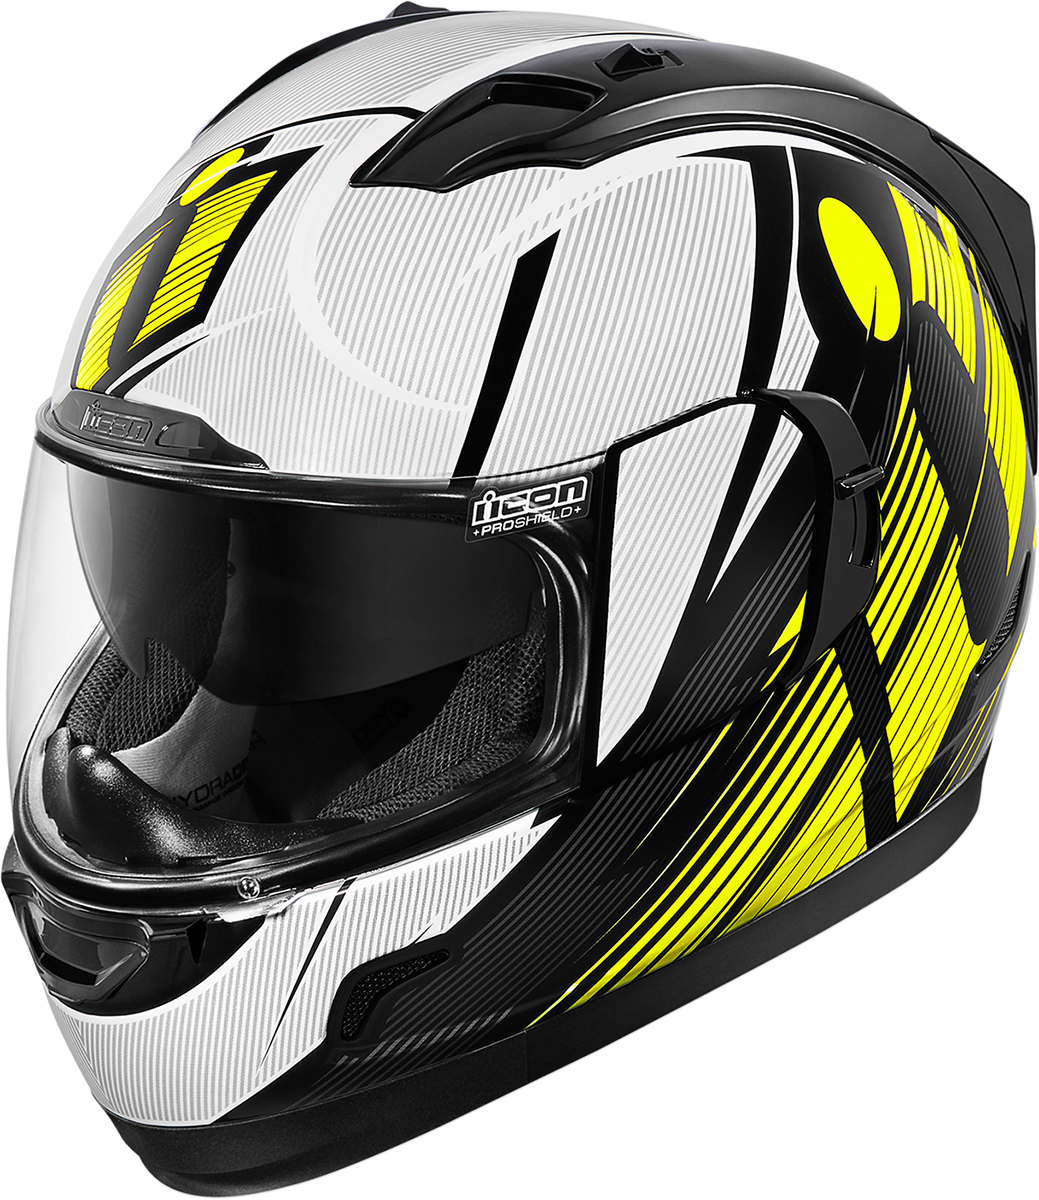 Motorcycle Helmet Png 1039 X 1200